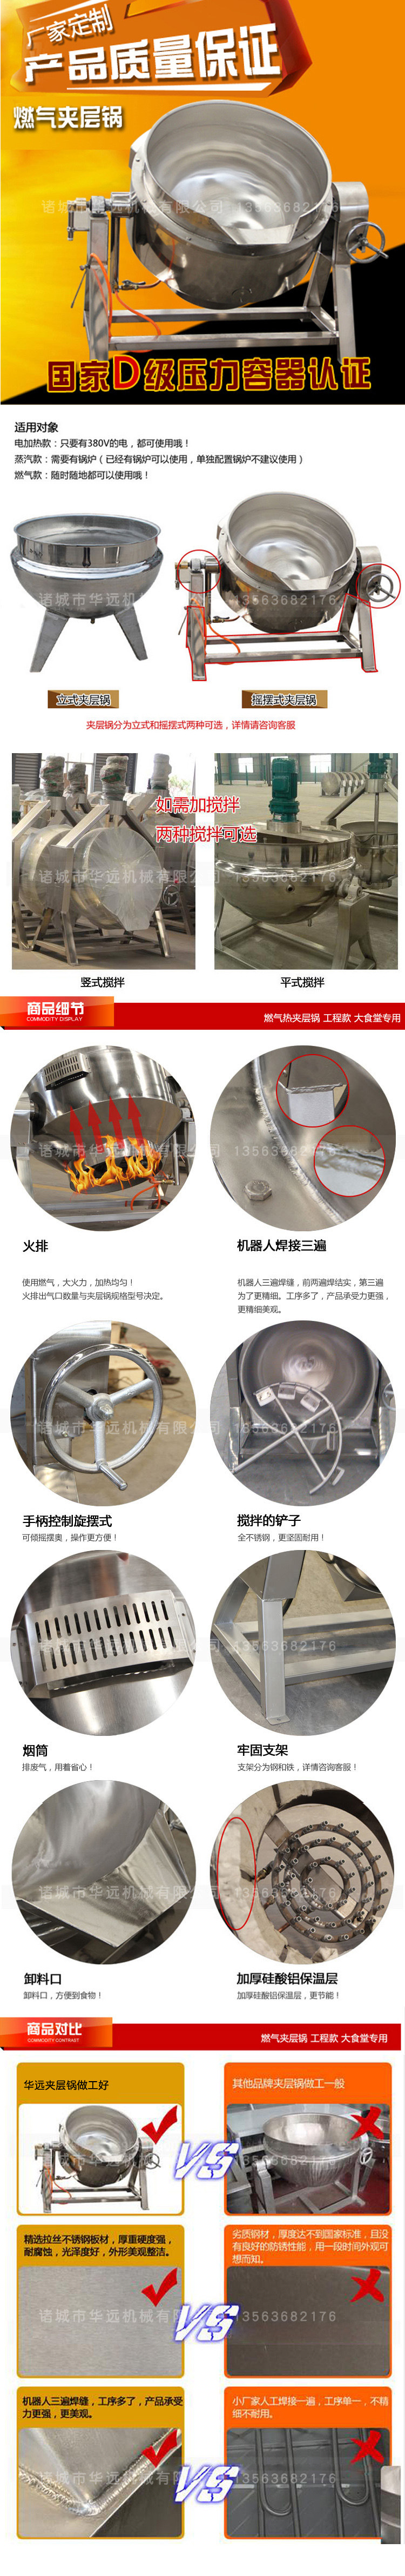 厂家热卖 可倾式燃气汤锅 加厚型不锈钢更耐用 整机质保一年